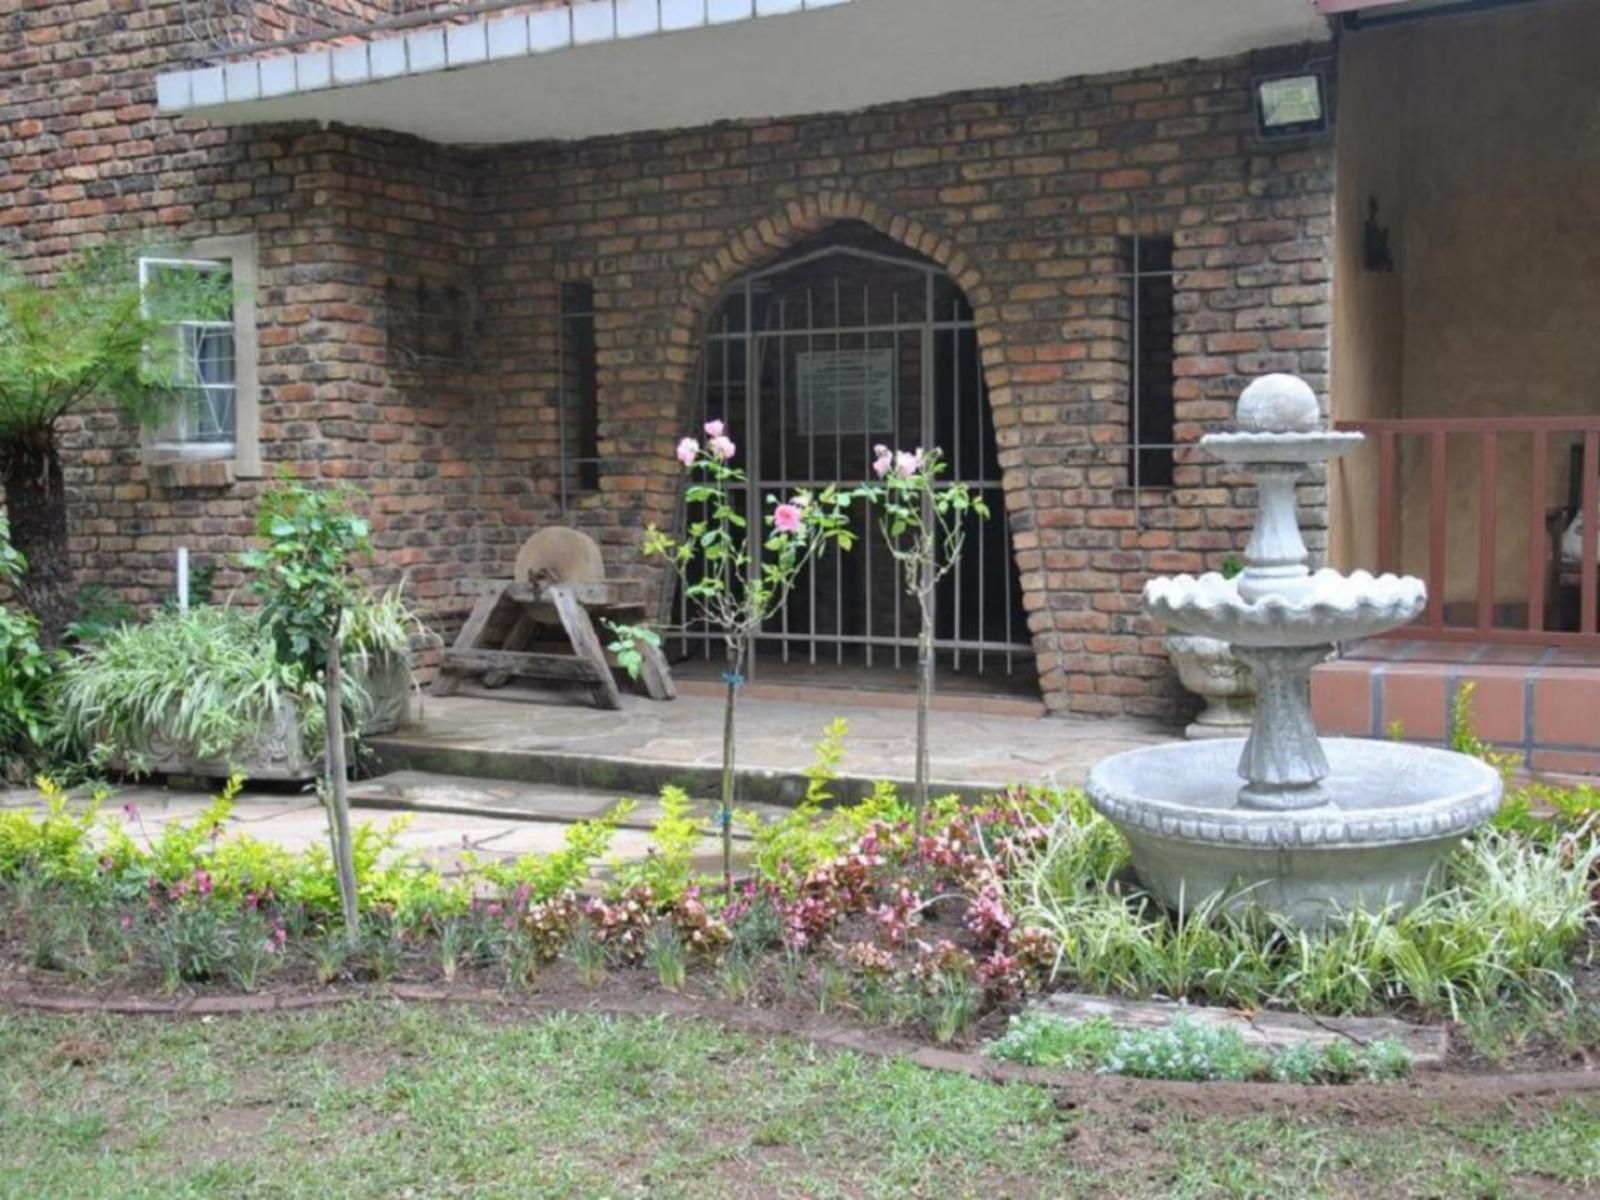 De Loft Guest House Piet Retief Mpumalanga South Africa House, Building, Architecture, Garden, Nature, Plant